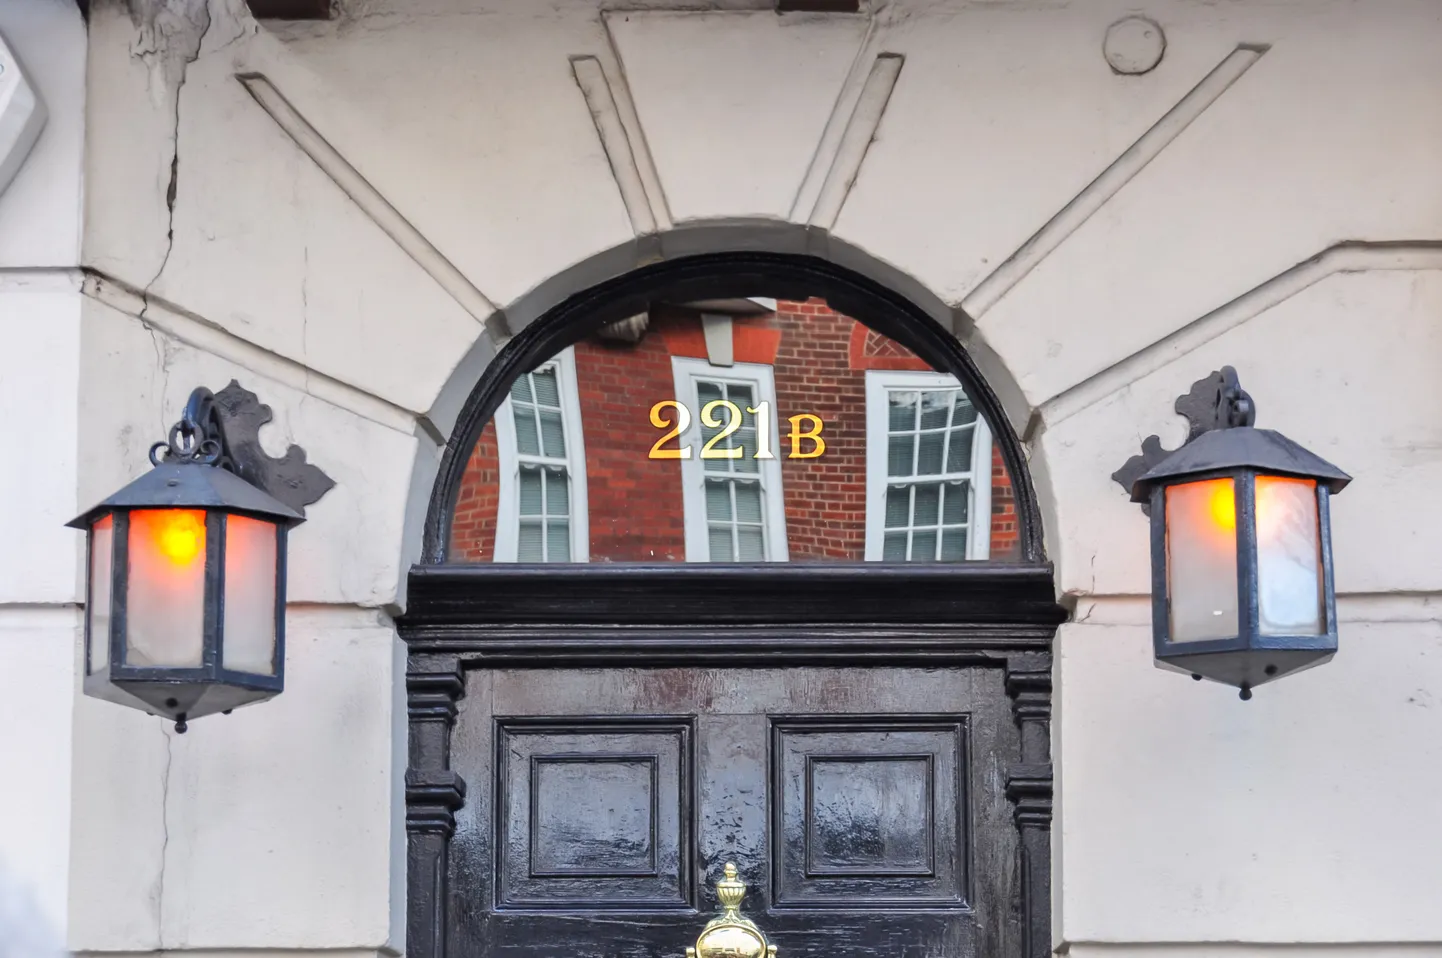 Дом по адресу Бейкер-стрит, 221B в Лондоне.